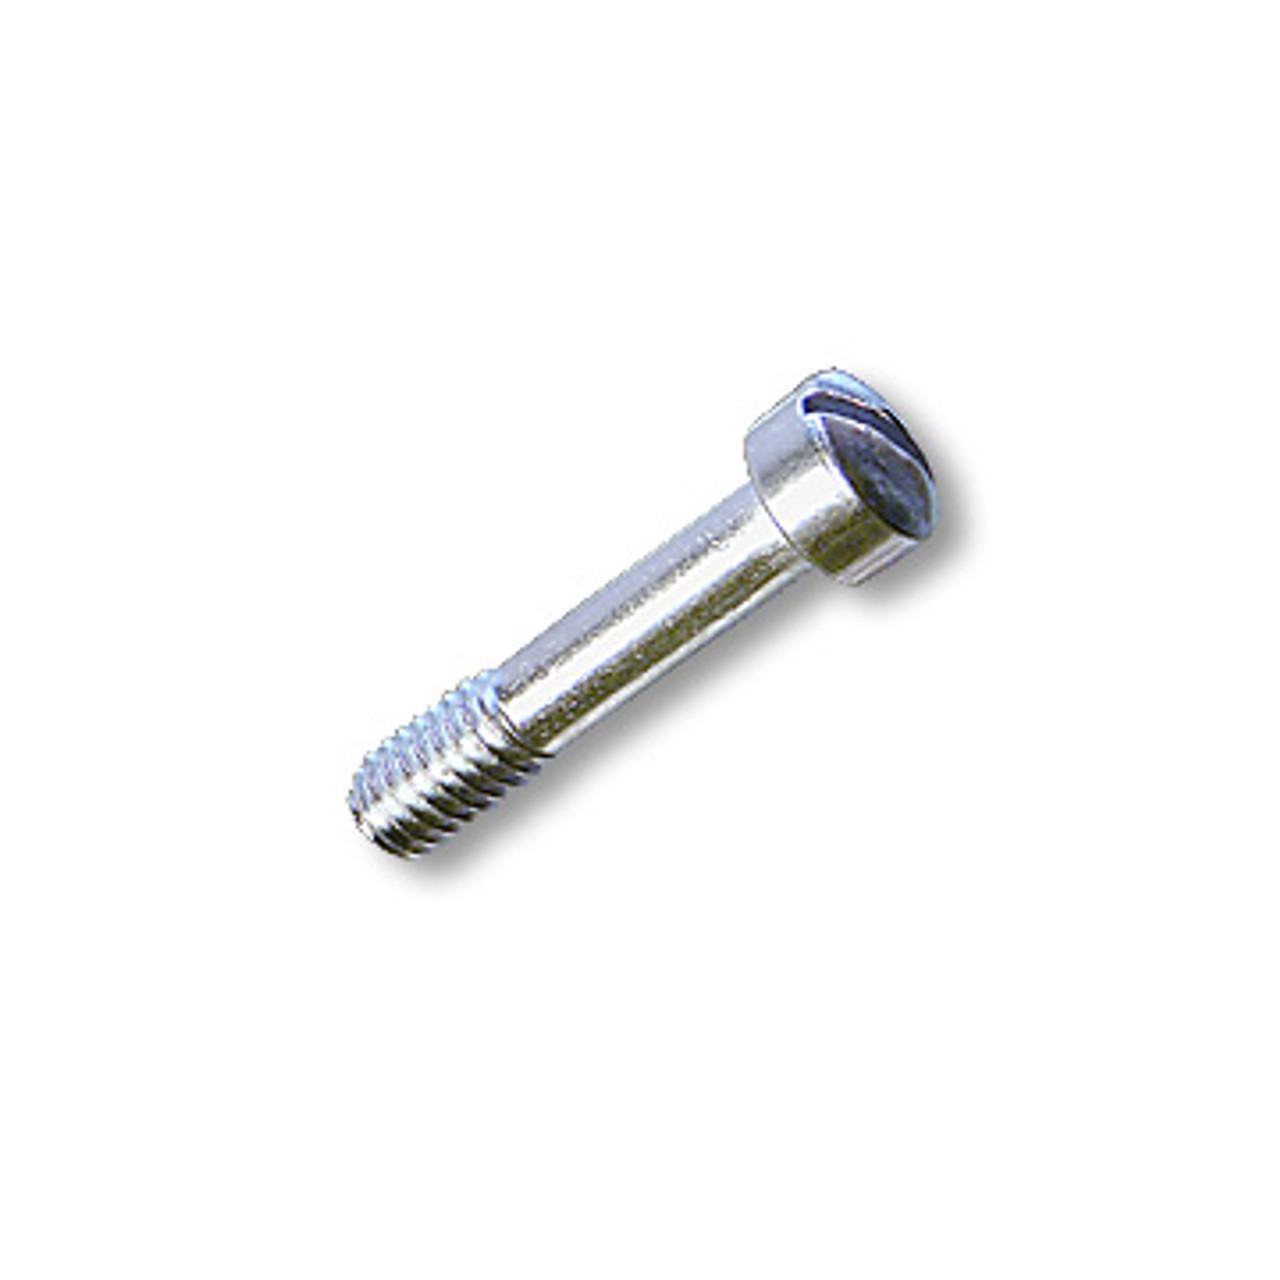 Fillister Head Screw - 5/16-18 X 1-1/2", Zinc Plated